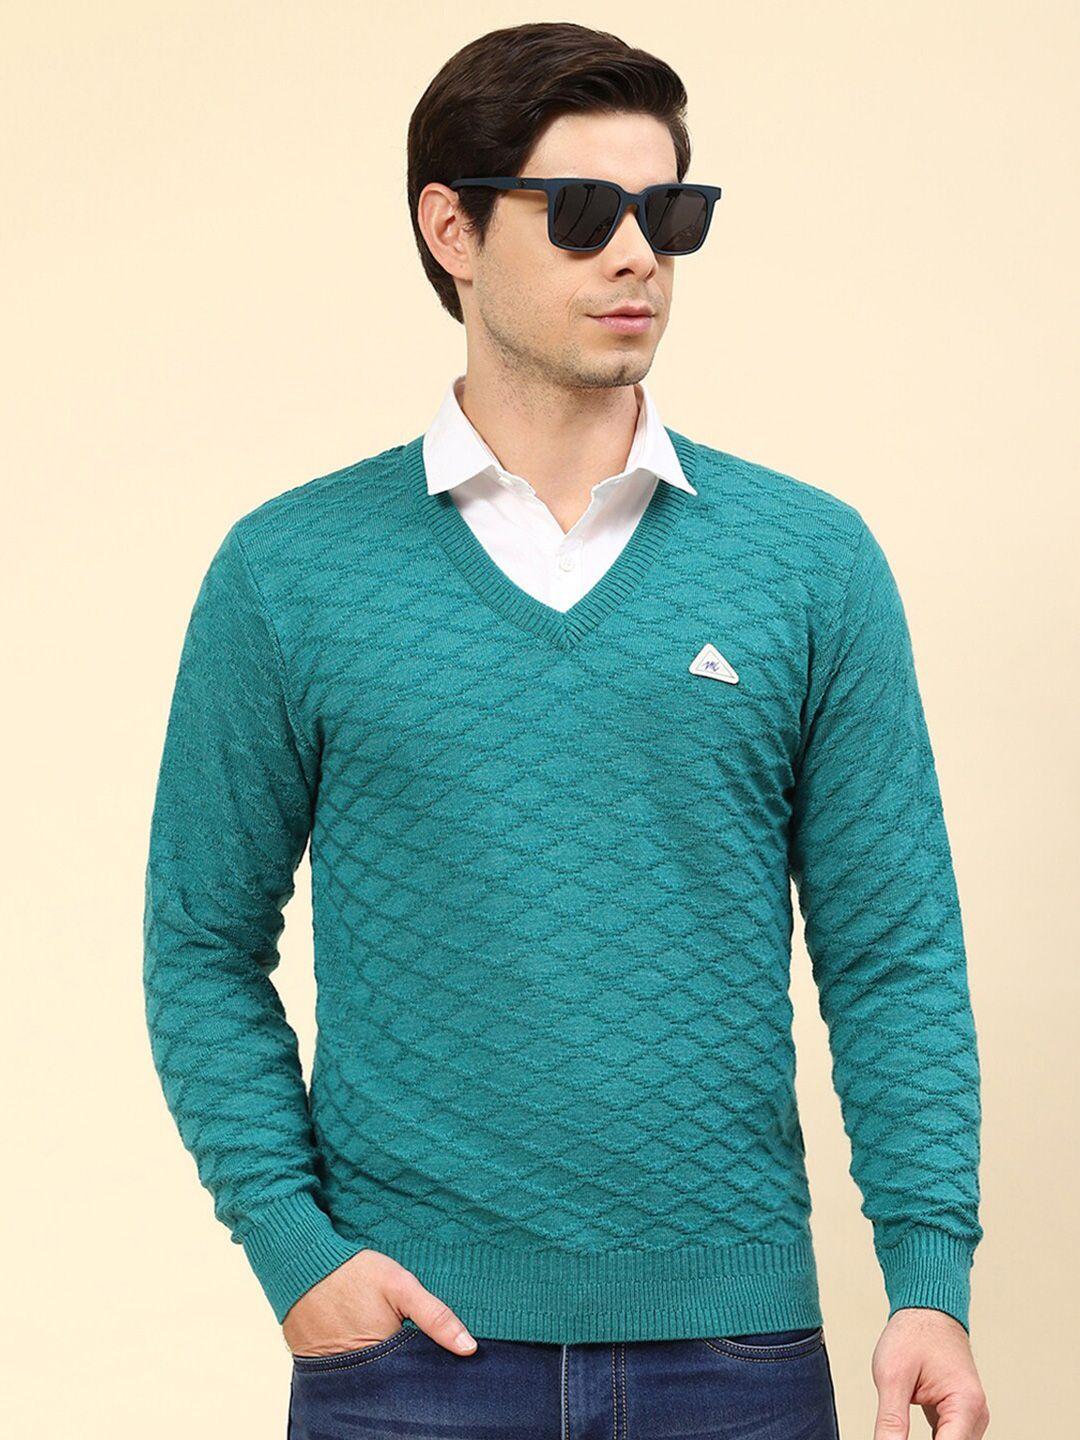 monte-carlo-cable-knit-self-design-v-neck-pullover-sweater